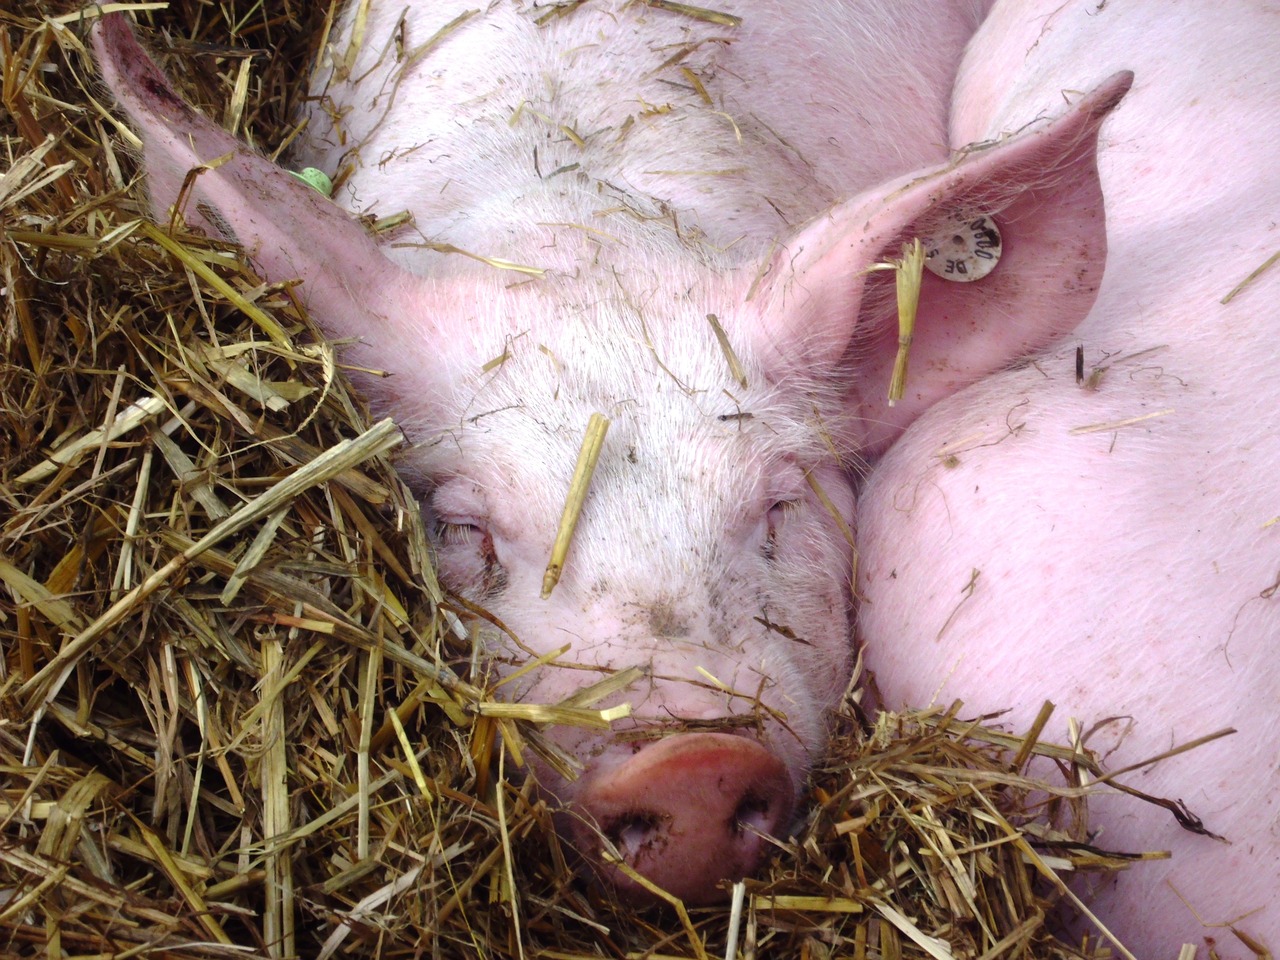 Puja un 5,5% la producció de carn de porc a Espanya entre gener i juny 